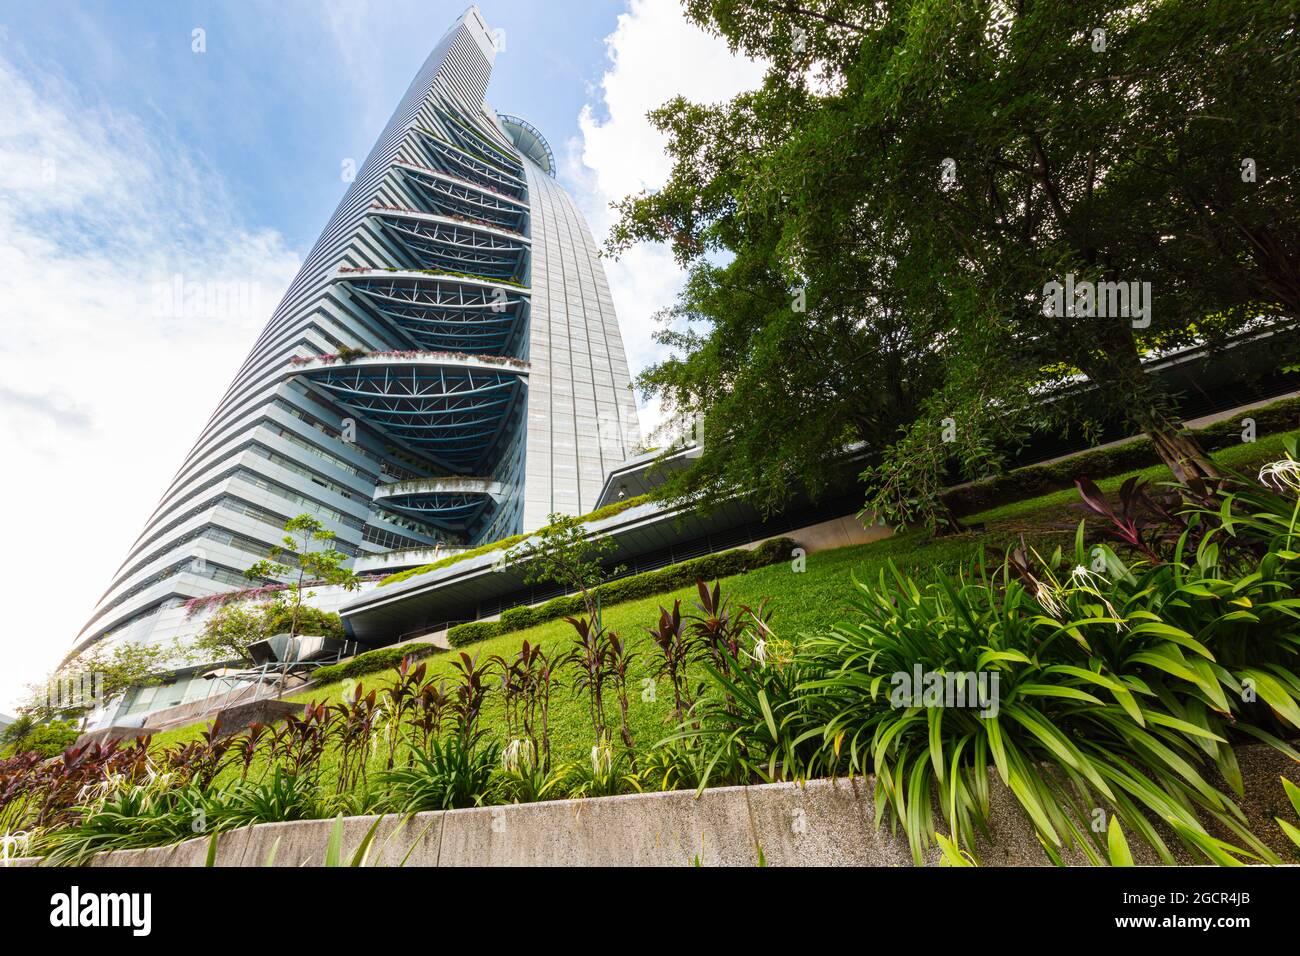 Kuala Lumpur, Malaisie - 11 novembre 2020 : vue sur la tour Bangsar Menara TM, également appelée Tour Telekom. La forme du gratte-ciel Banque D'Images